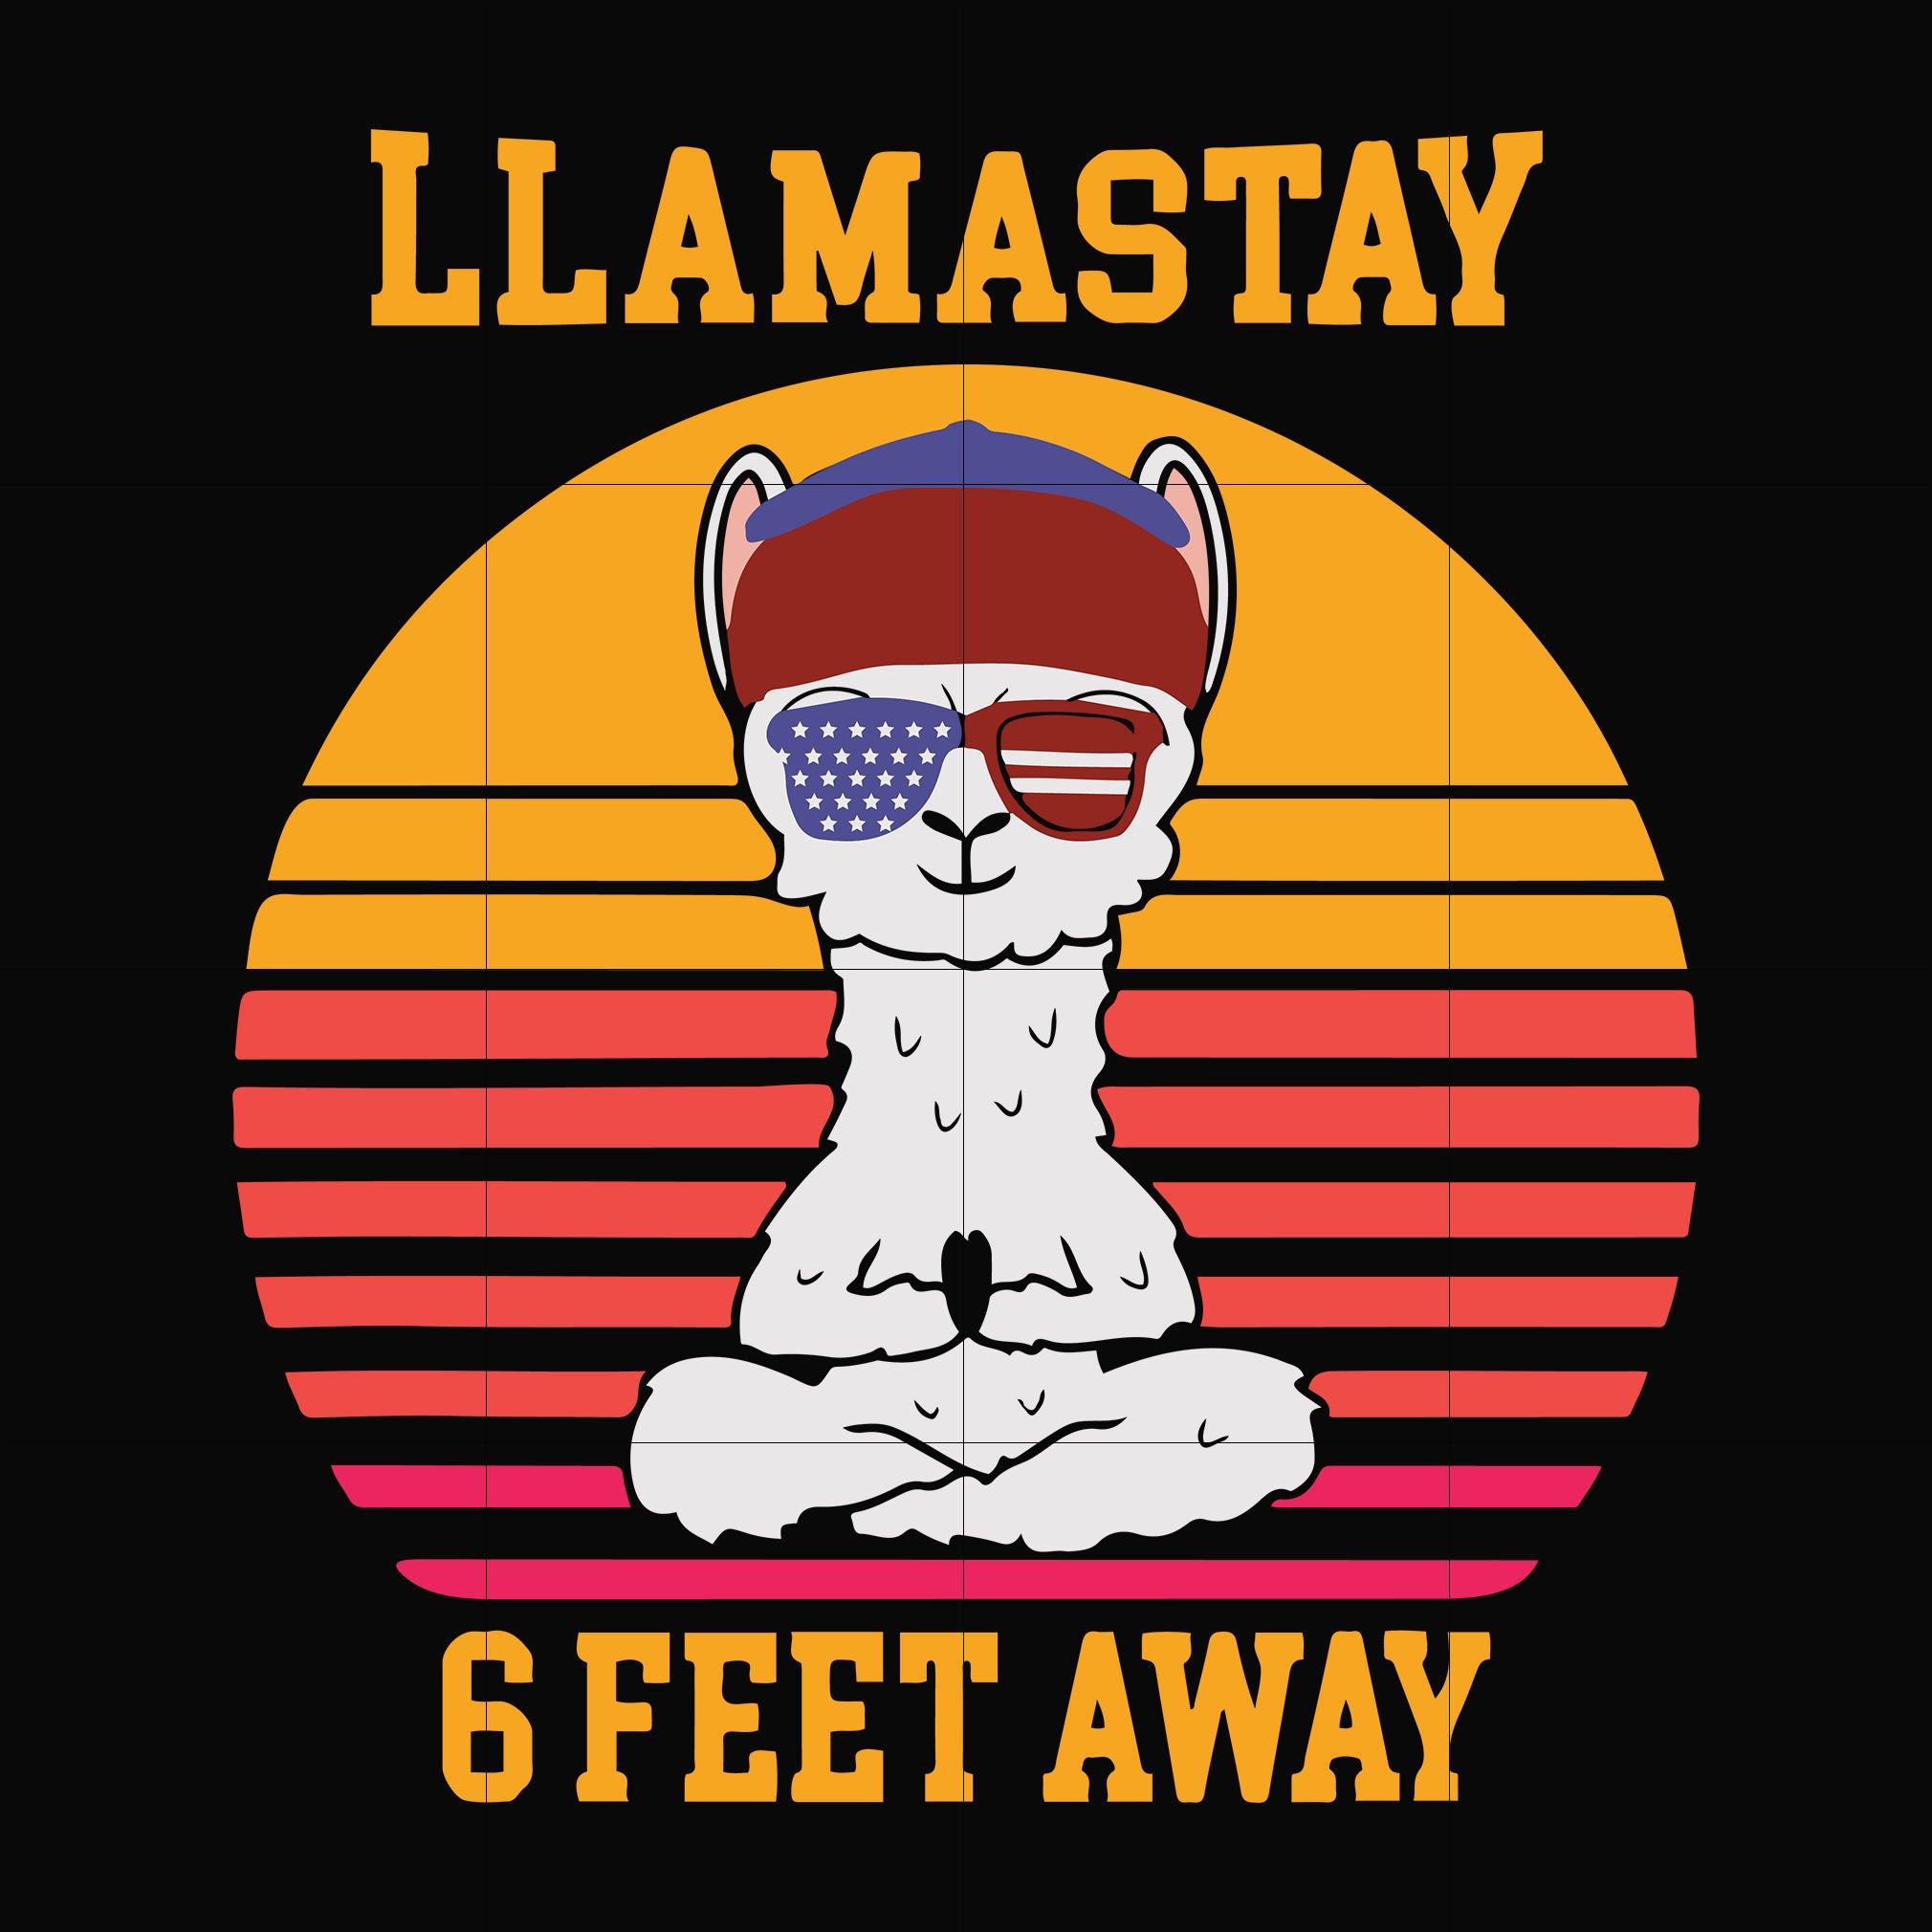 Llamastay 6 feet away svg, png, dxf, eps digital file TD27072044